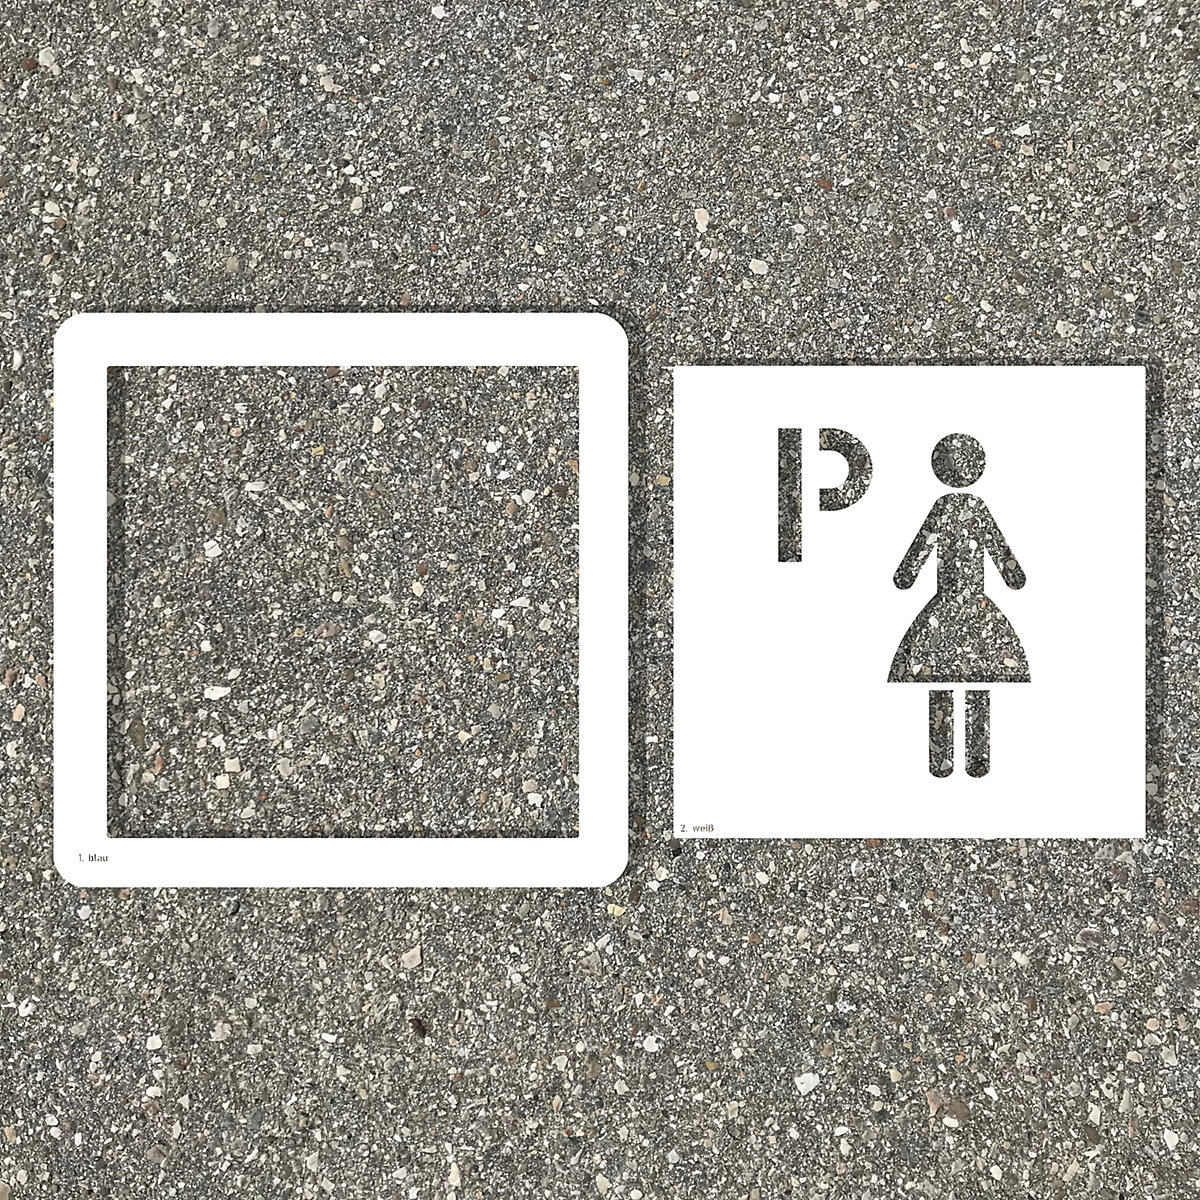 Gabarit de marquage des sols, parking pour femmes, film adhésif